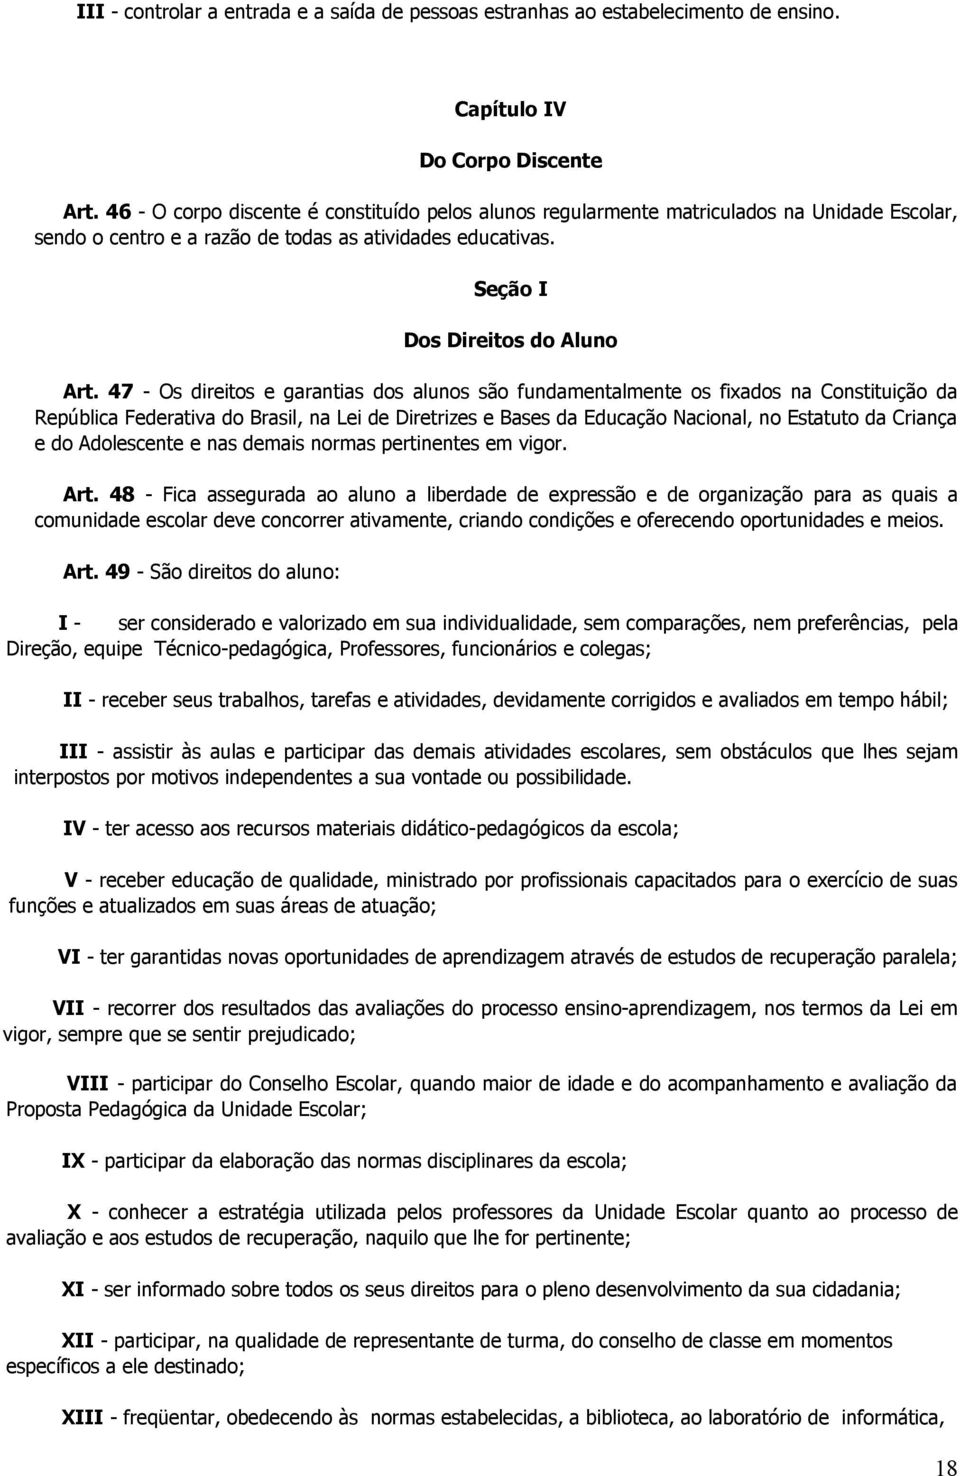 47 - Os direitos e garantias dos alunos são fundamentalmente os fixados na Constituição da República Federativa do Brasil, na Lei de Diretrizes e Bases da Educação Nacional, no Estatuto da Criança e